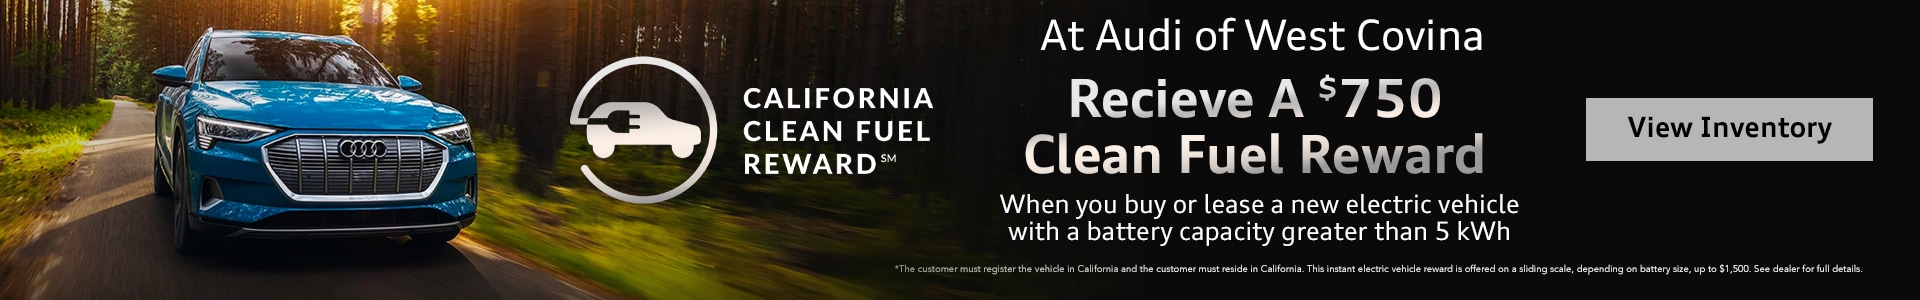 california-clean-fuel-reward-audi-west-covina